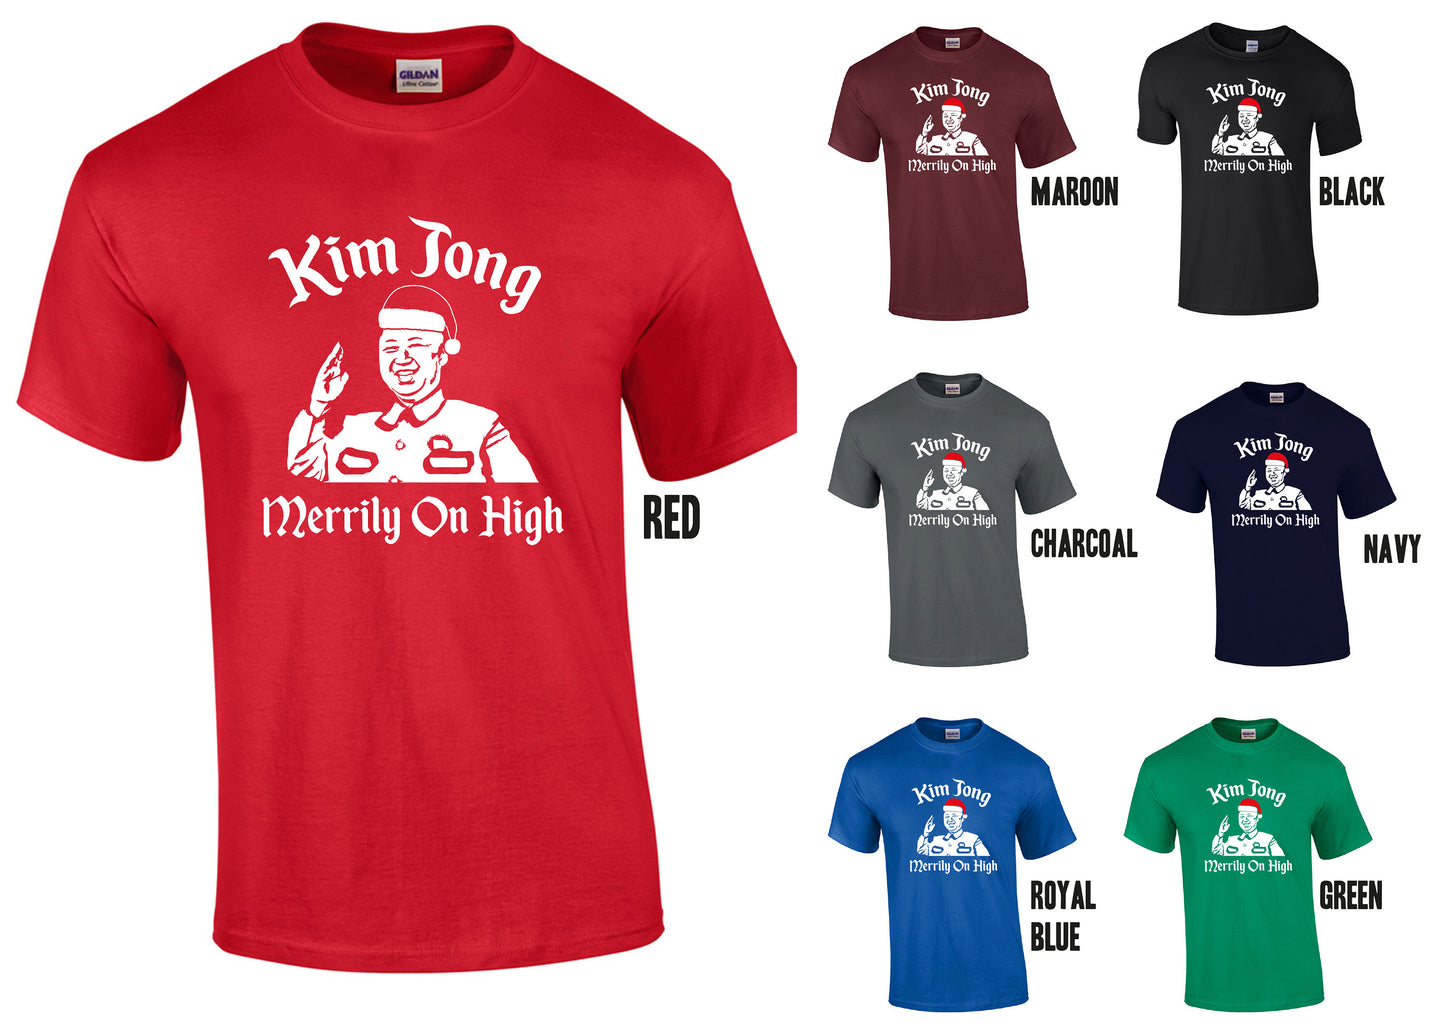 Kim Jong Merrily On High T-Shirt, Funny Christmas, Ding Dong